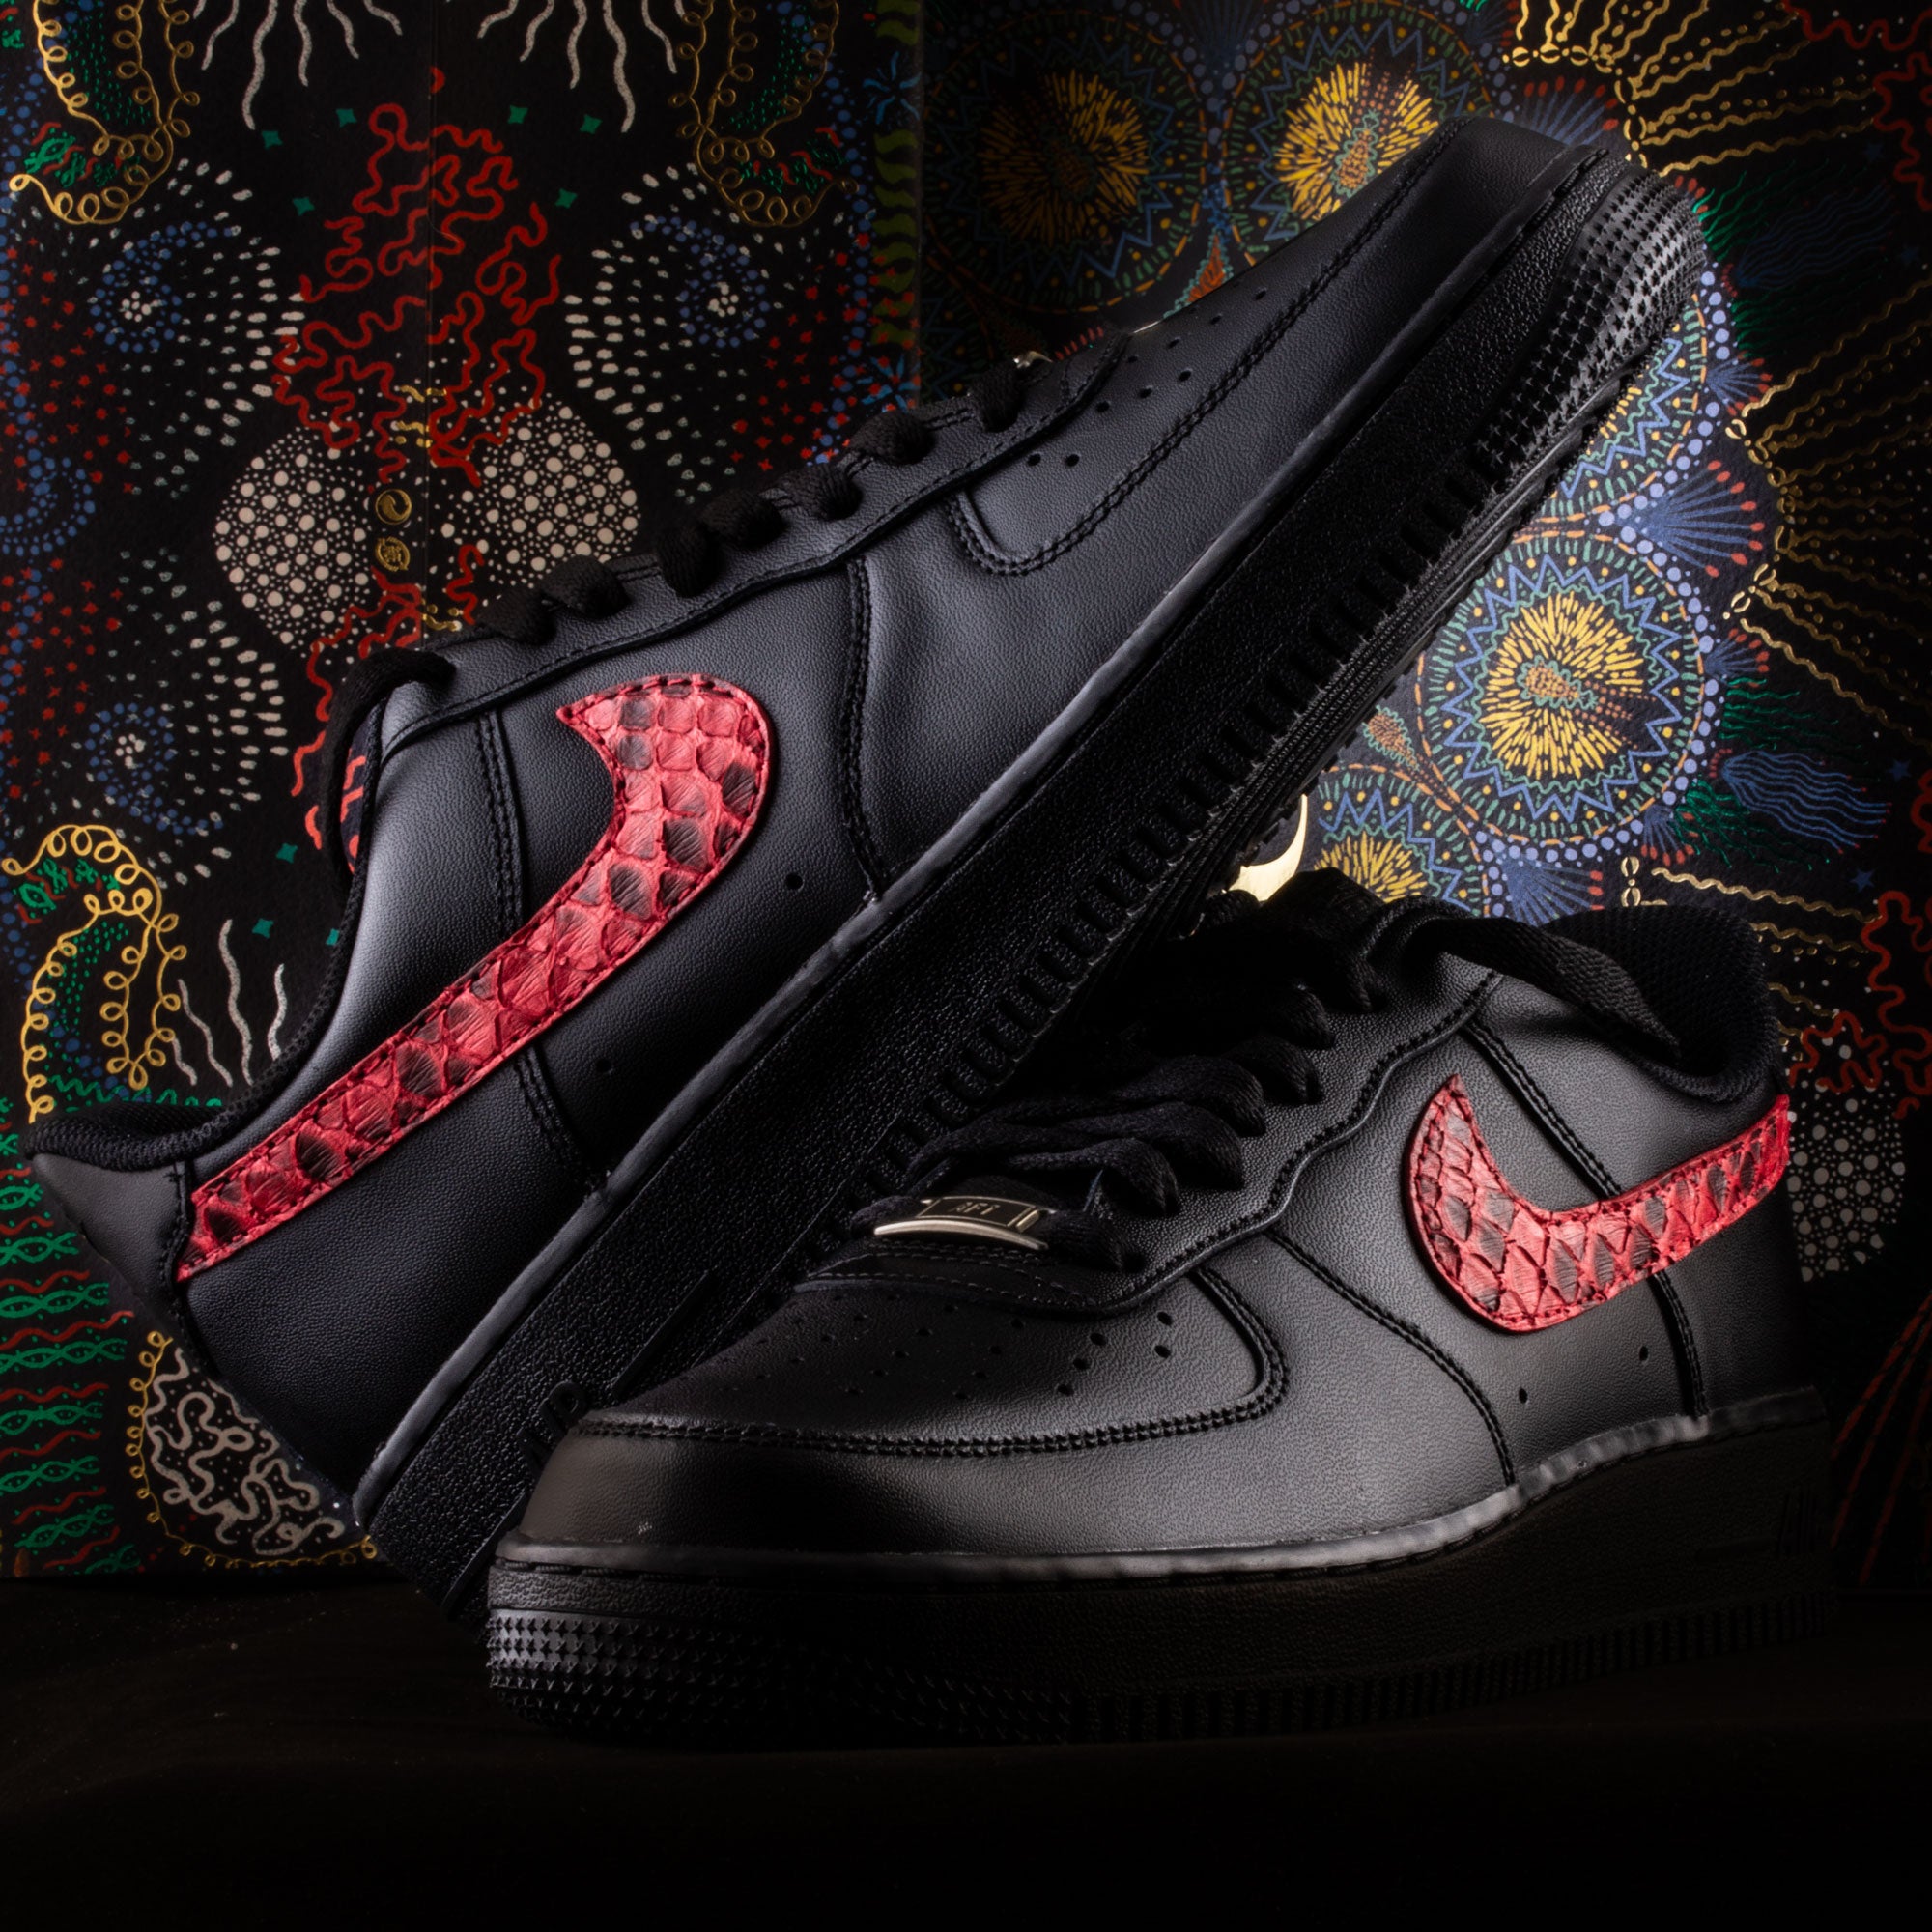 Sneakers Nike Air force 1  - Custom Swoosh cuir - Python